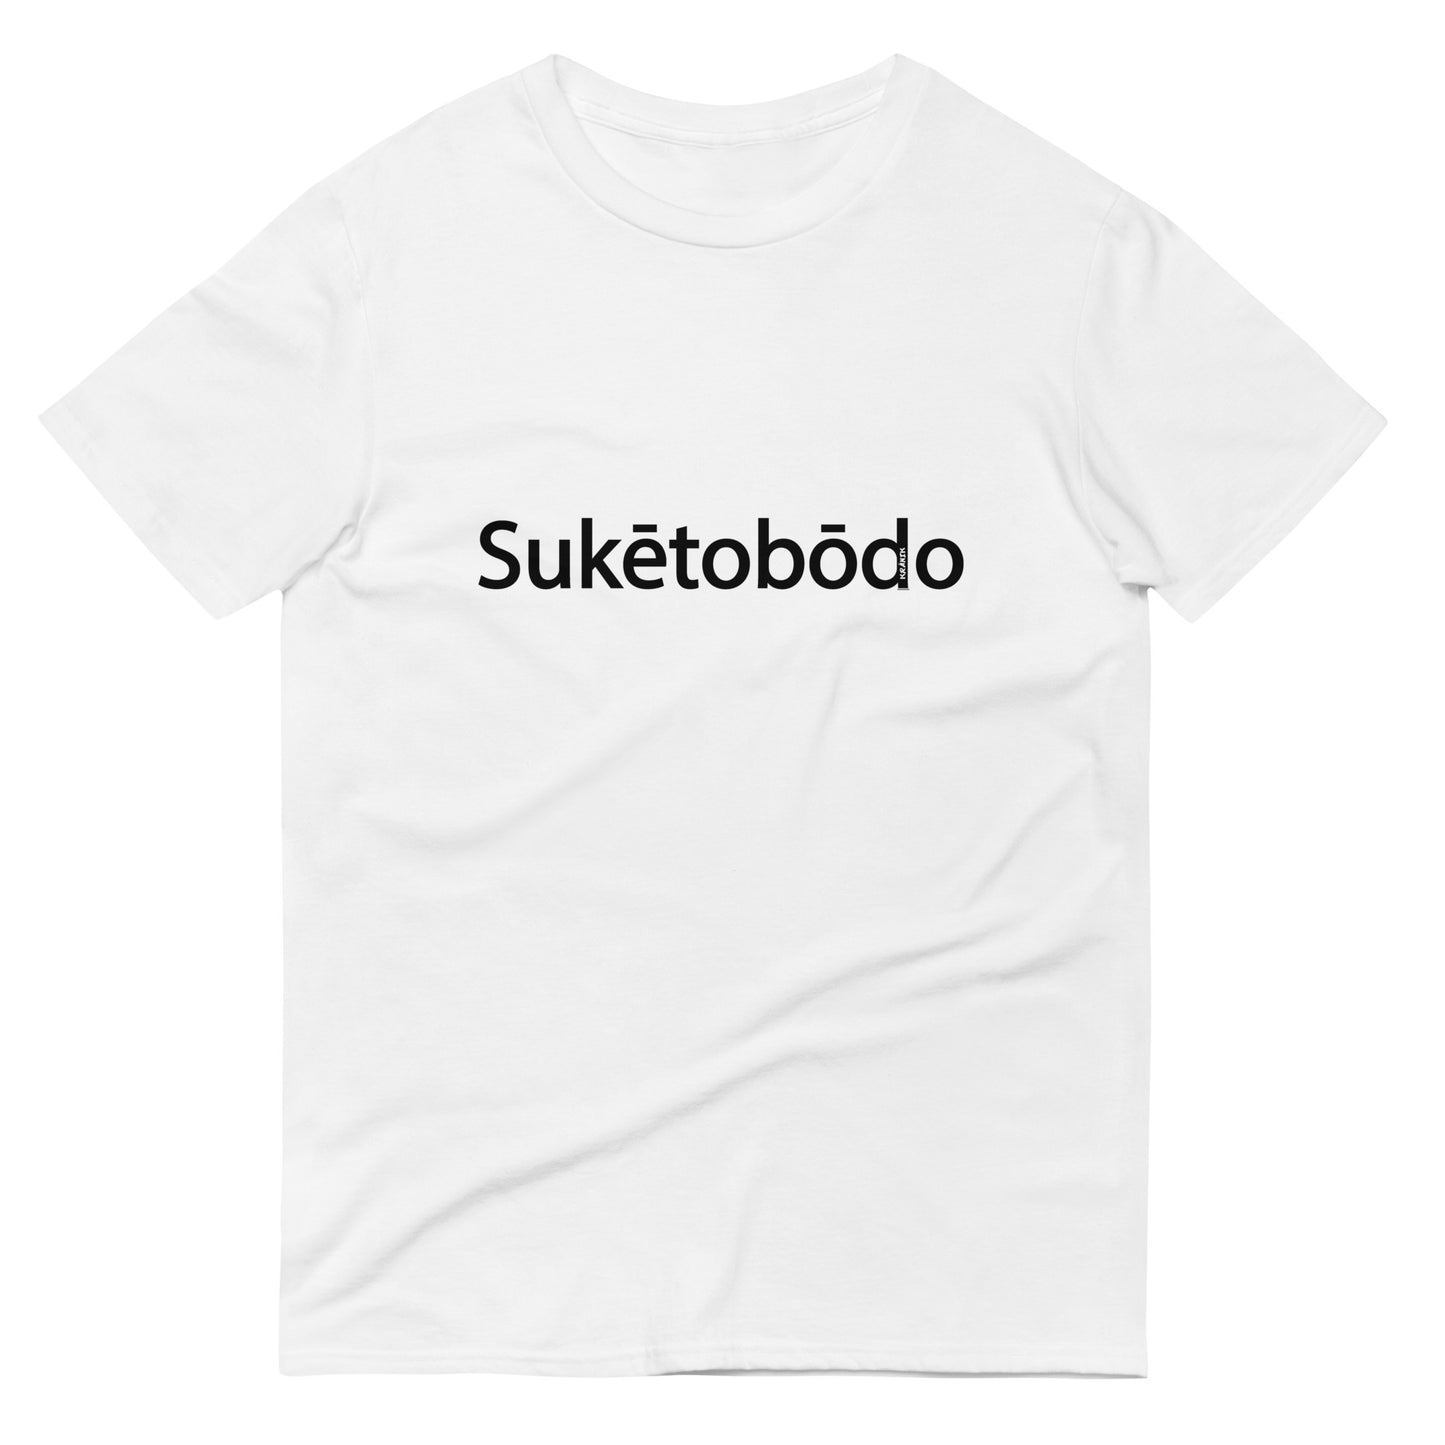 Suketobodo Brand / #06 / Shirt / Suketobodo